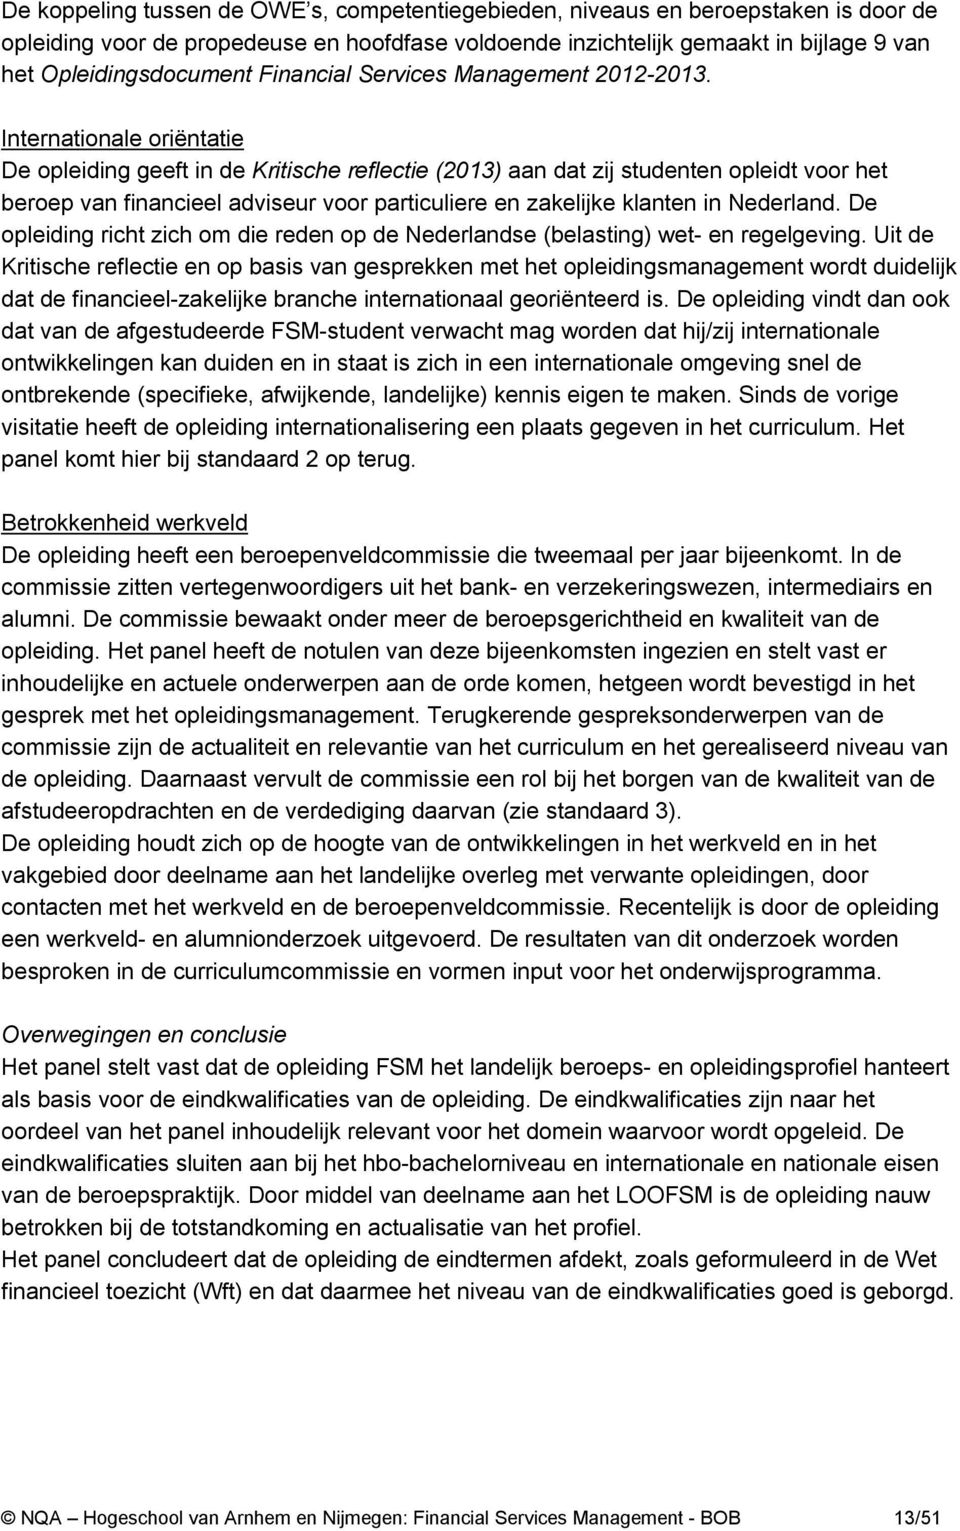 Internationale oriëntatie De opleiding geeft in de Kritische reflectie (2013) aan dat zij studenten opleidt voor het beroep van financieel adviseur voor particuliere en zakelijke klanten in Nederland.